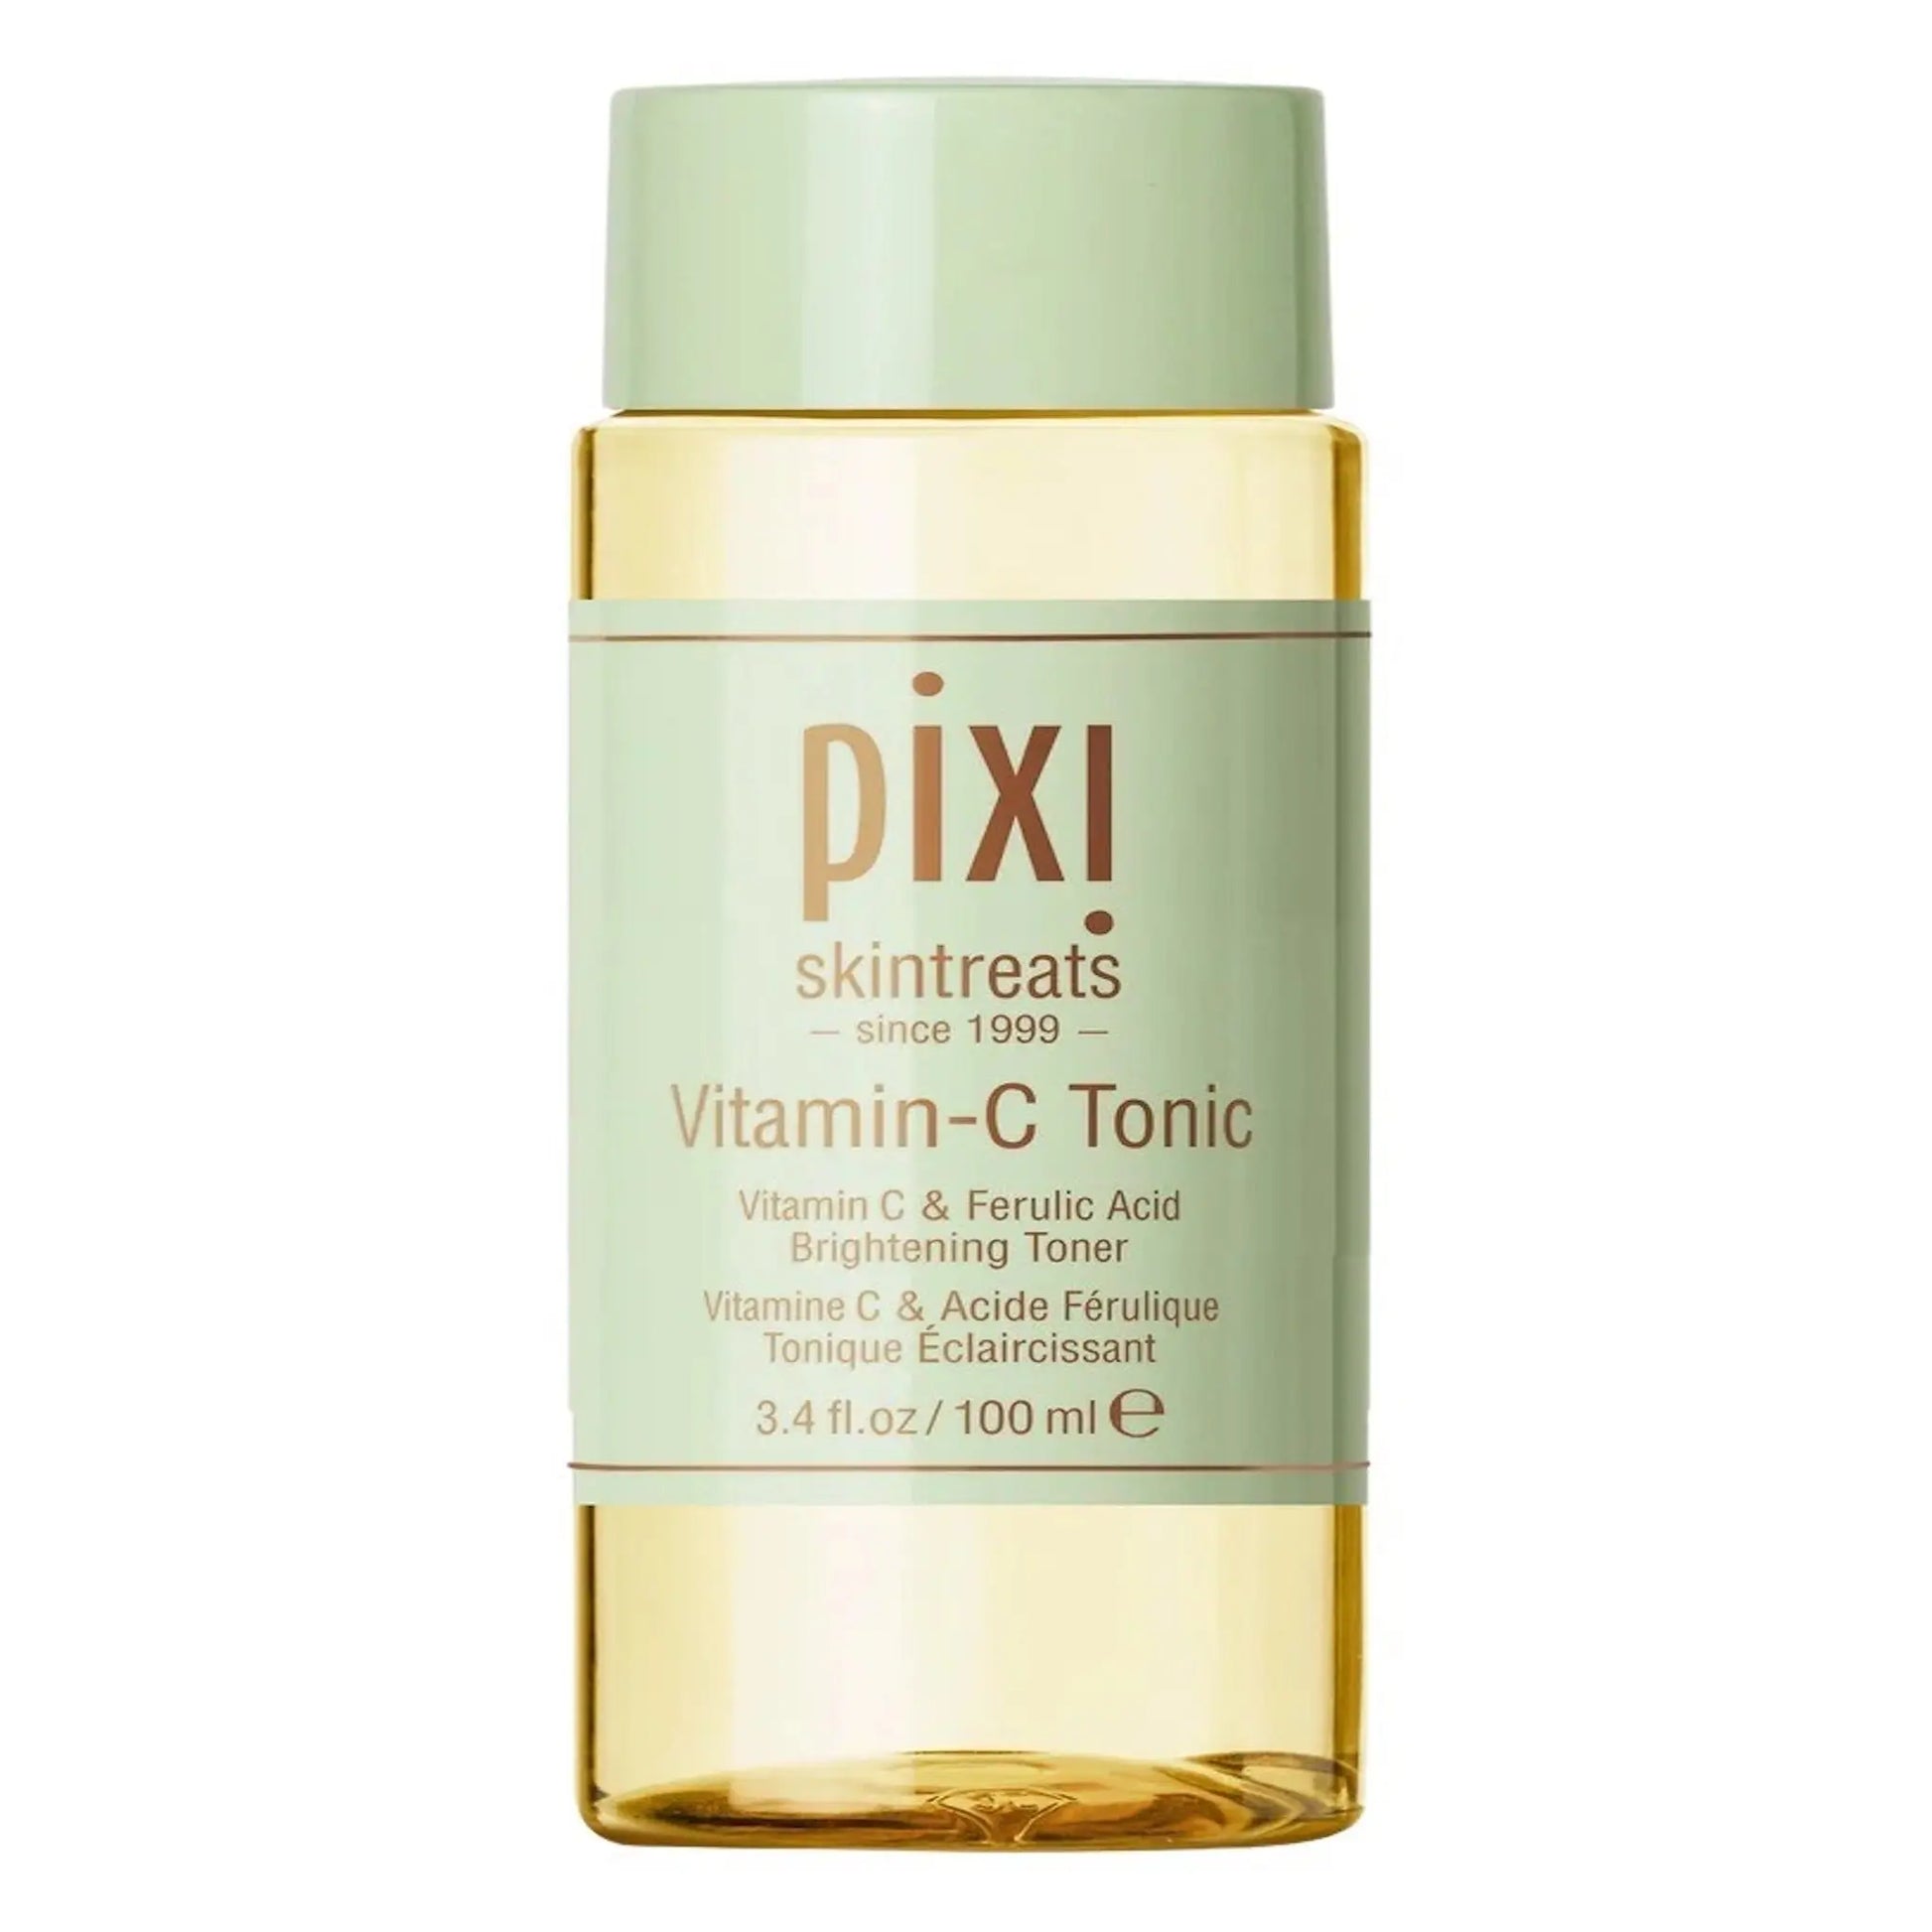 Pixi Vitamin C Tonic Pixi